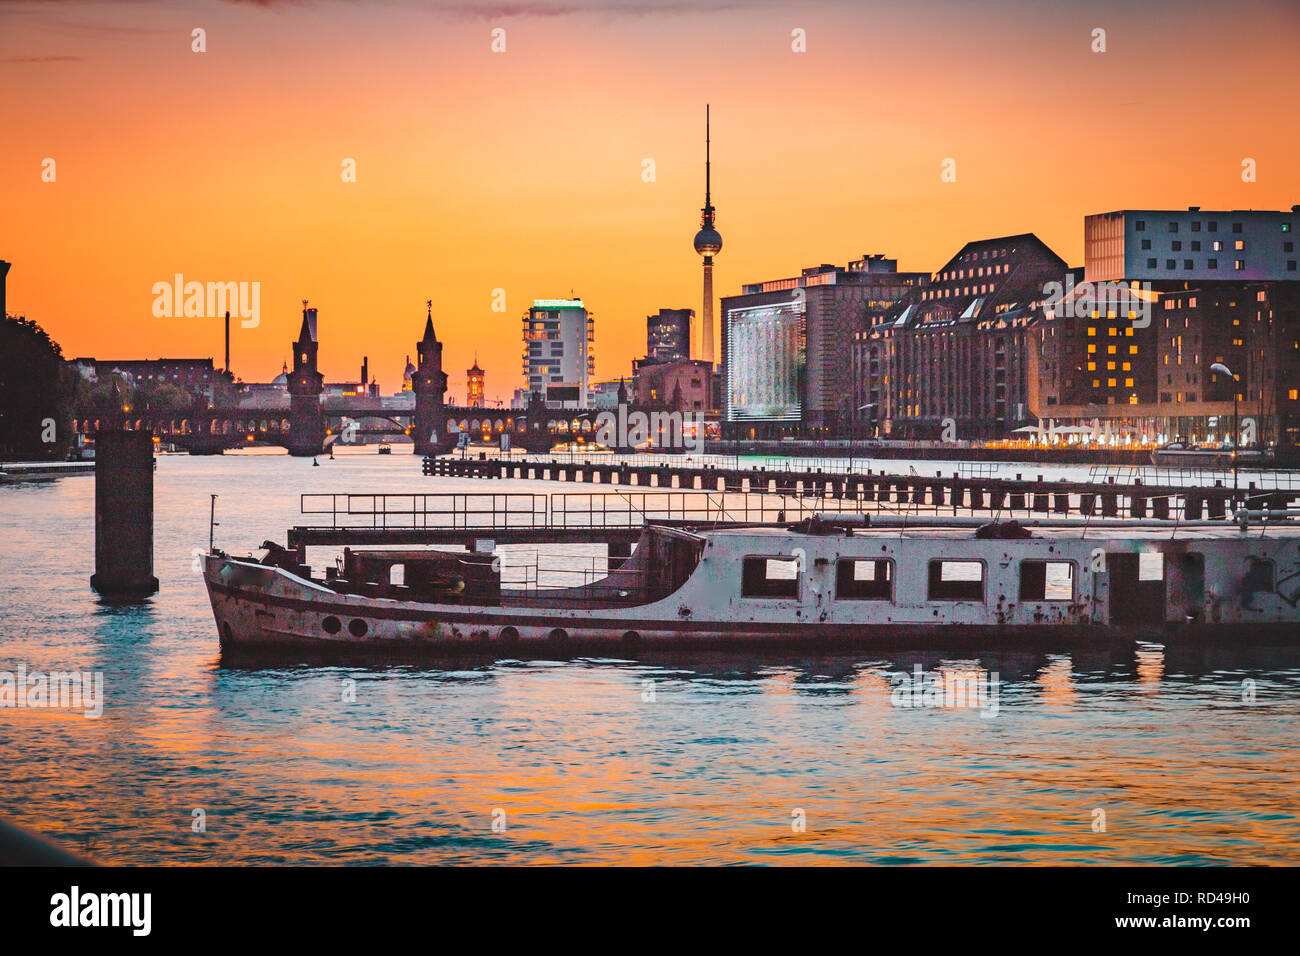 Vista panoramica sullo skyline di Berlino con la famosa torre della televisione e il Ponte Oberbaum con la vecchia nave relitto giacente nel fiume Sprea al crepuscolo, Berlino, Germania Foto Stock